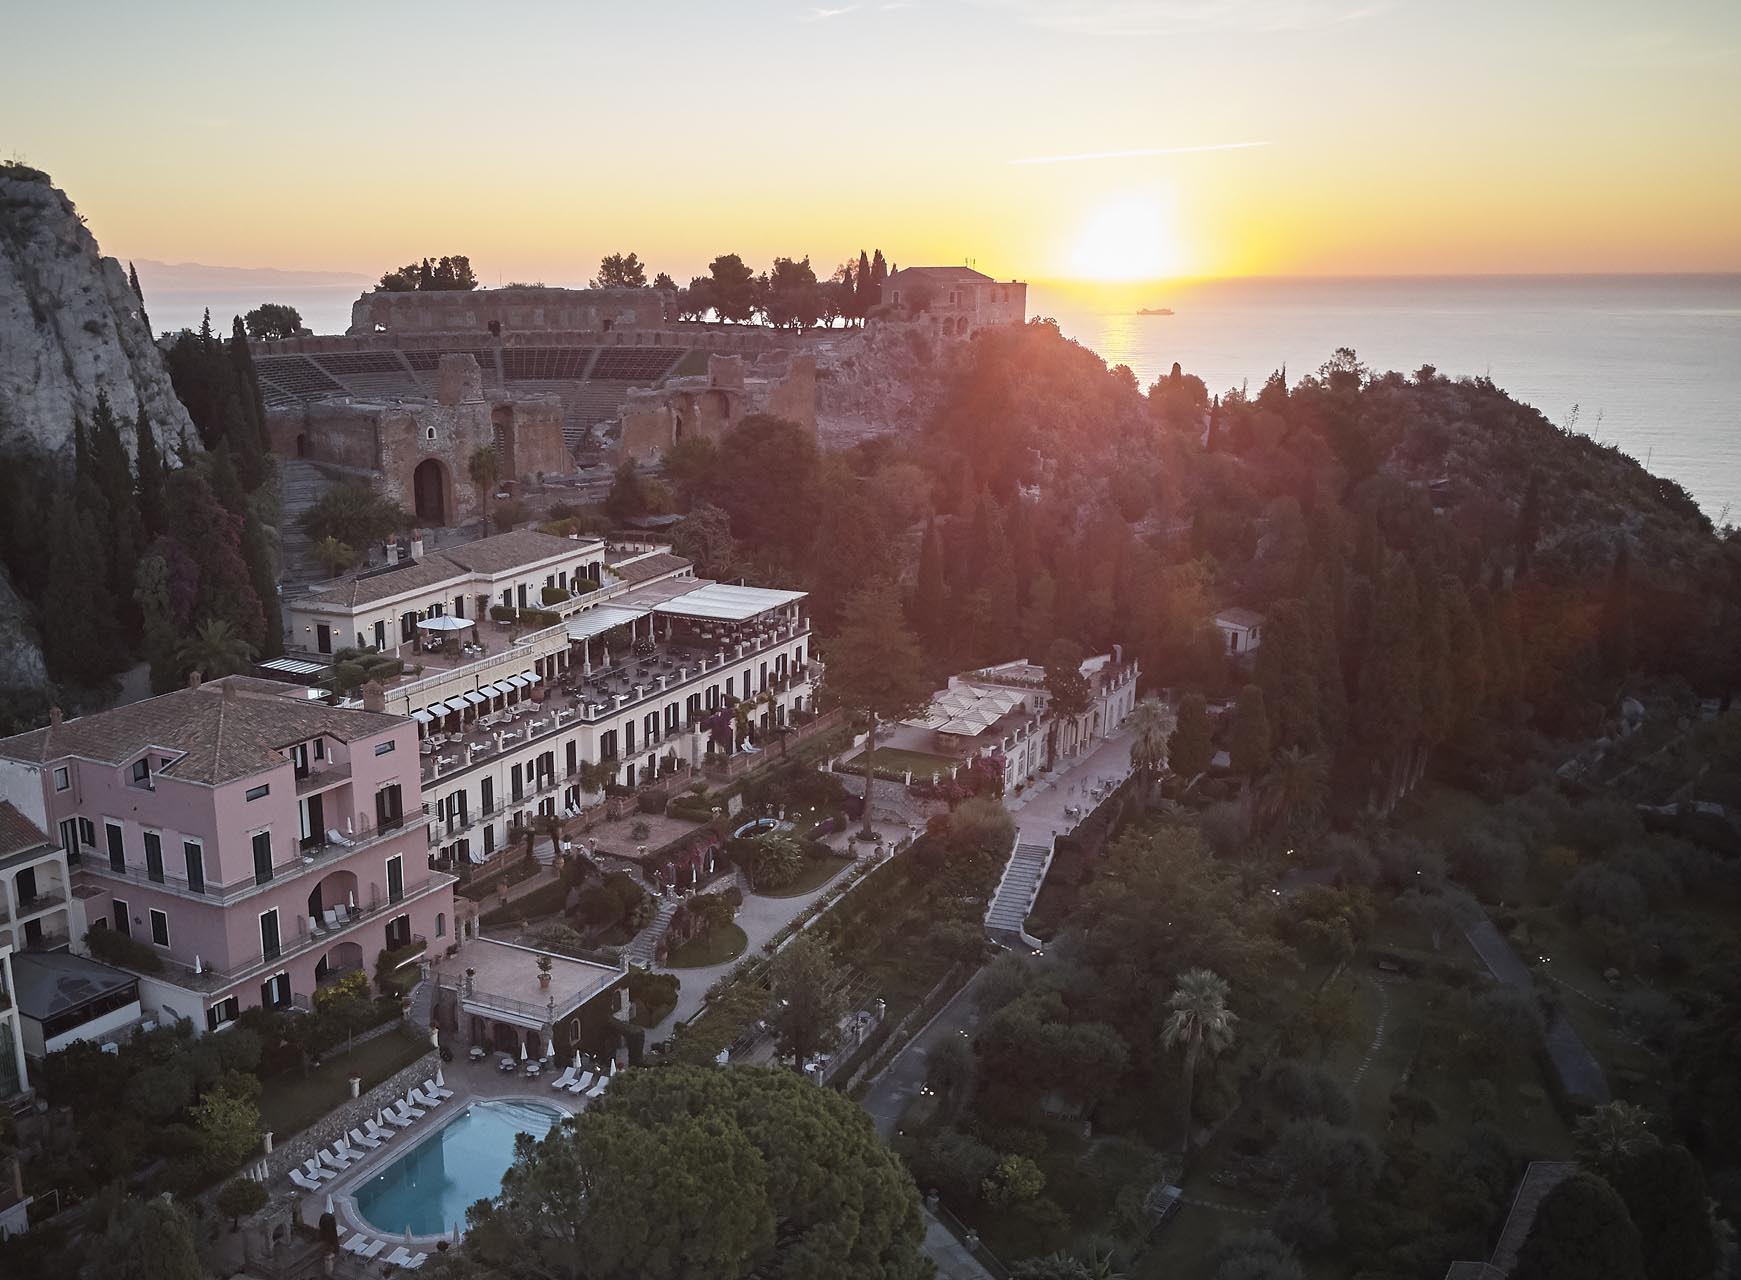 Il tramonto suggestivo sul Belmond Grand Hotel Timeo di Taormina. Affacciato sulla costa orientale della Sicilia, la struttura si trova vicino al Teatro Greco.